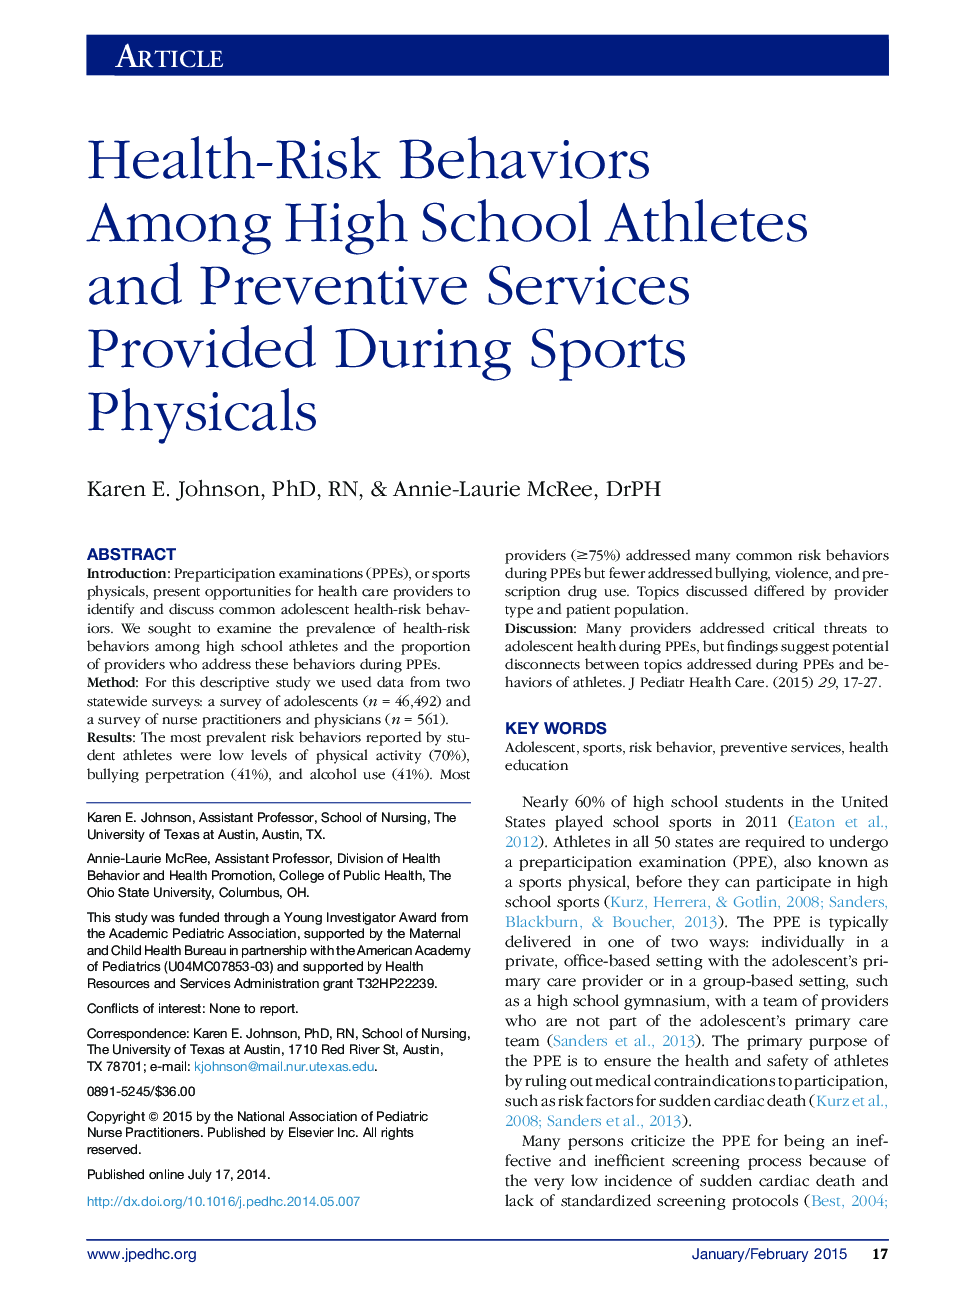 رفتارهای بهداشتی در میان ورزشکاران دبیرستانی و خدمات پیشگیرانه در طول ورزش های فیزیکی ارائه شده  